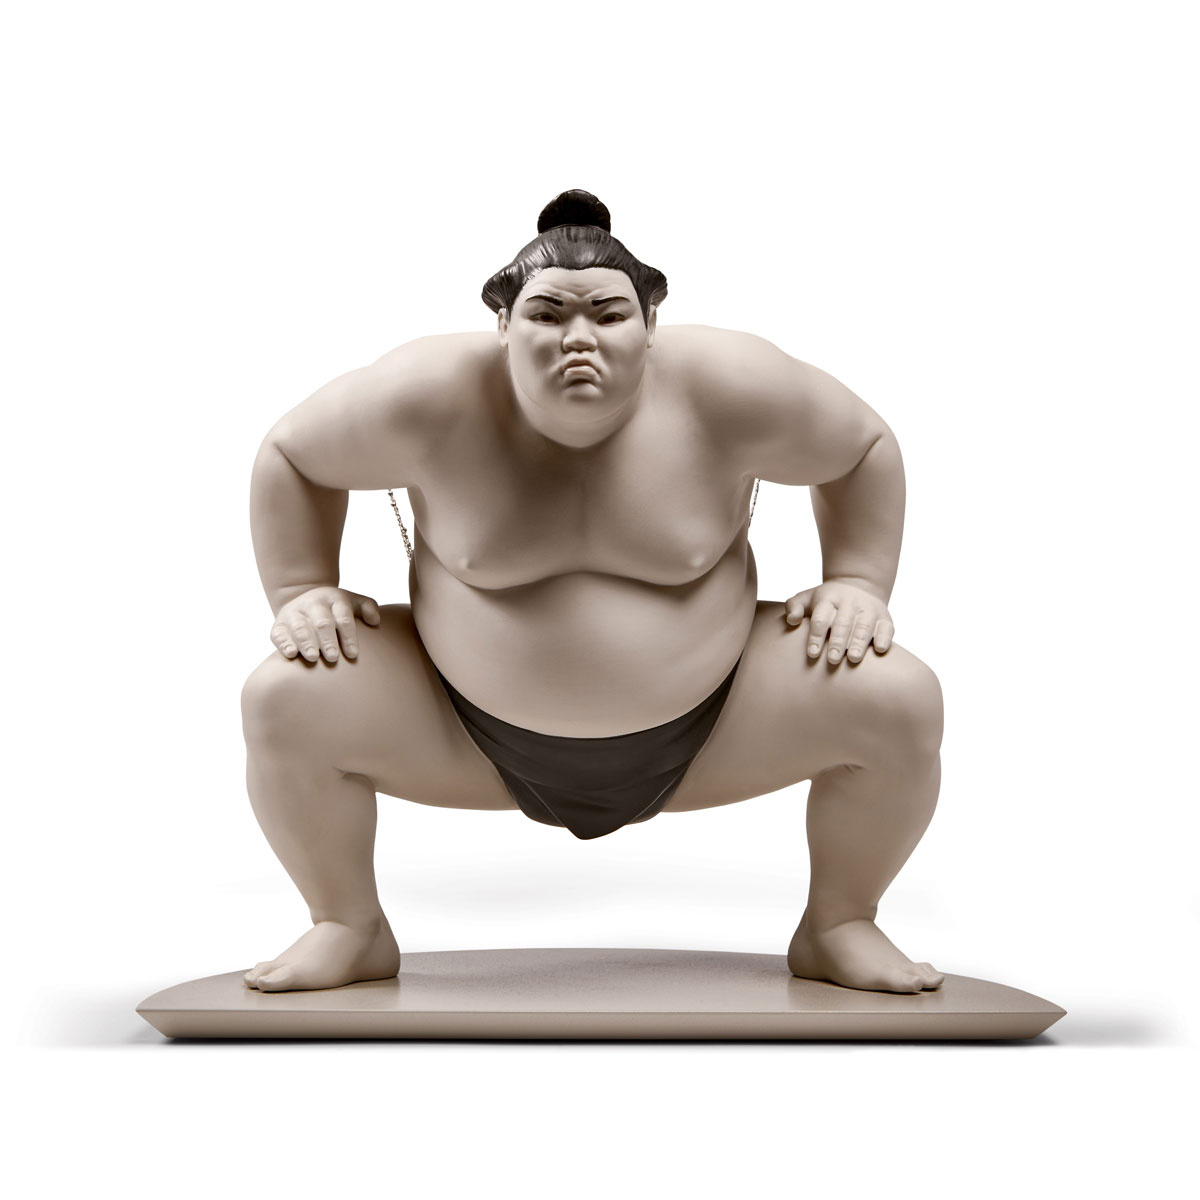 Lladro Classic Sculpture, Sumo Fighter Figurine